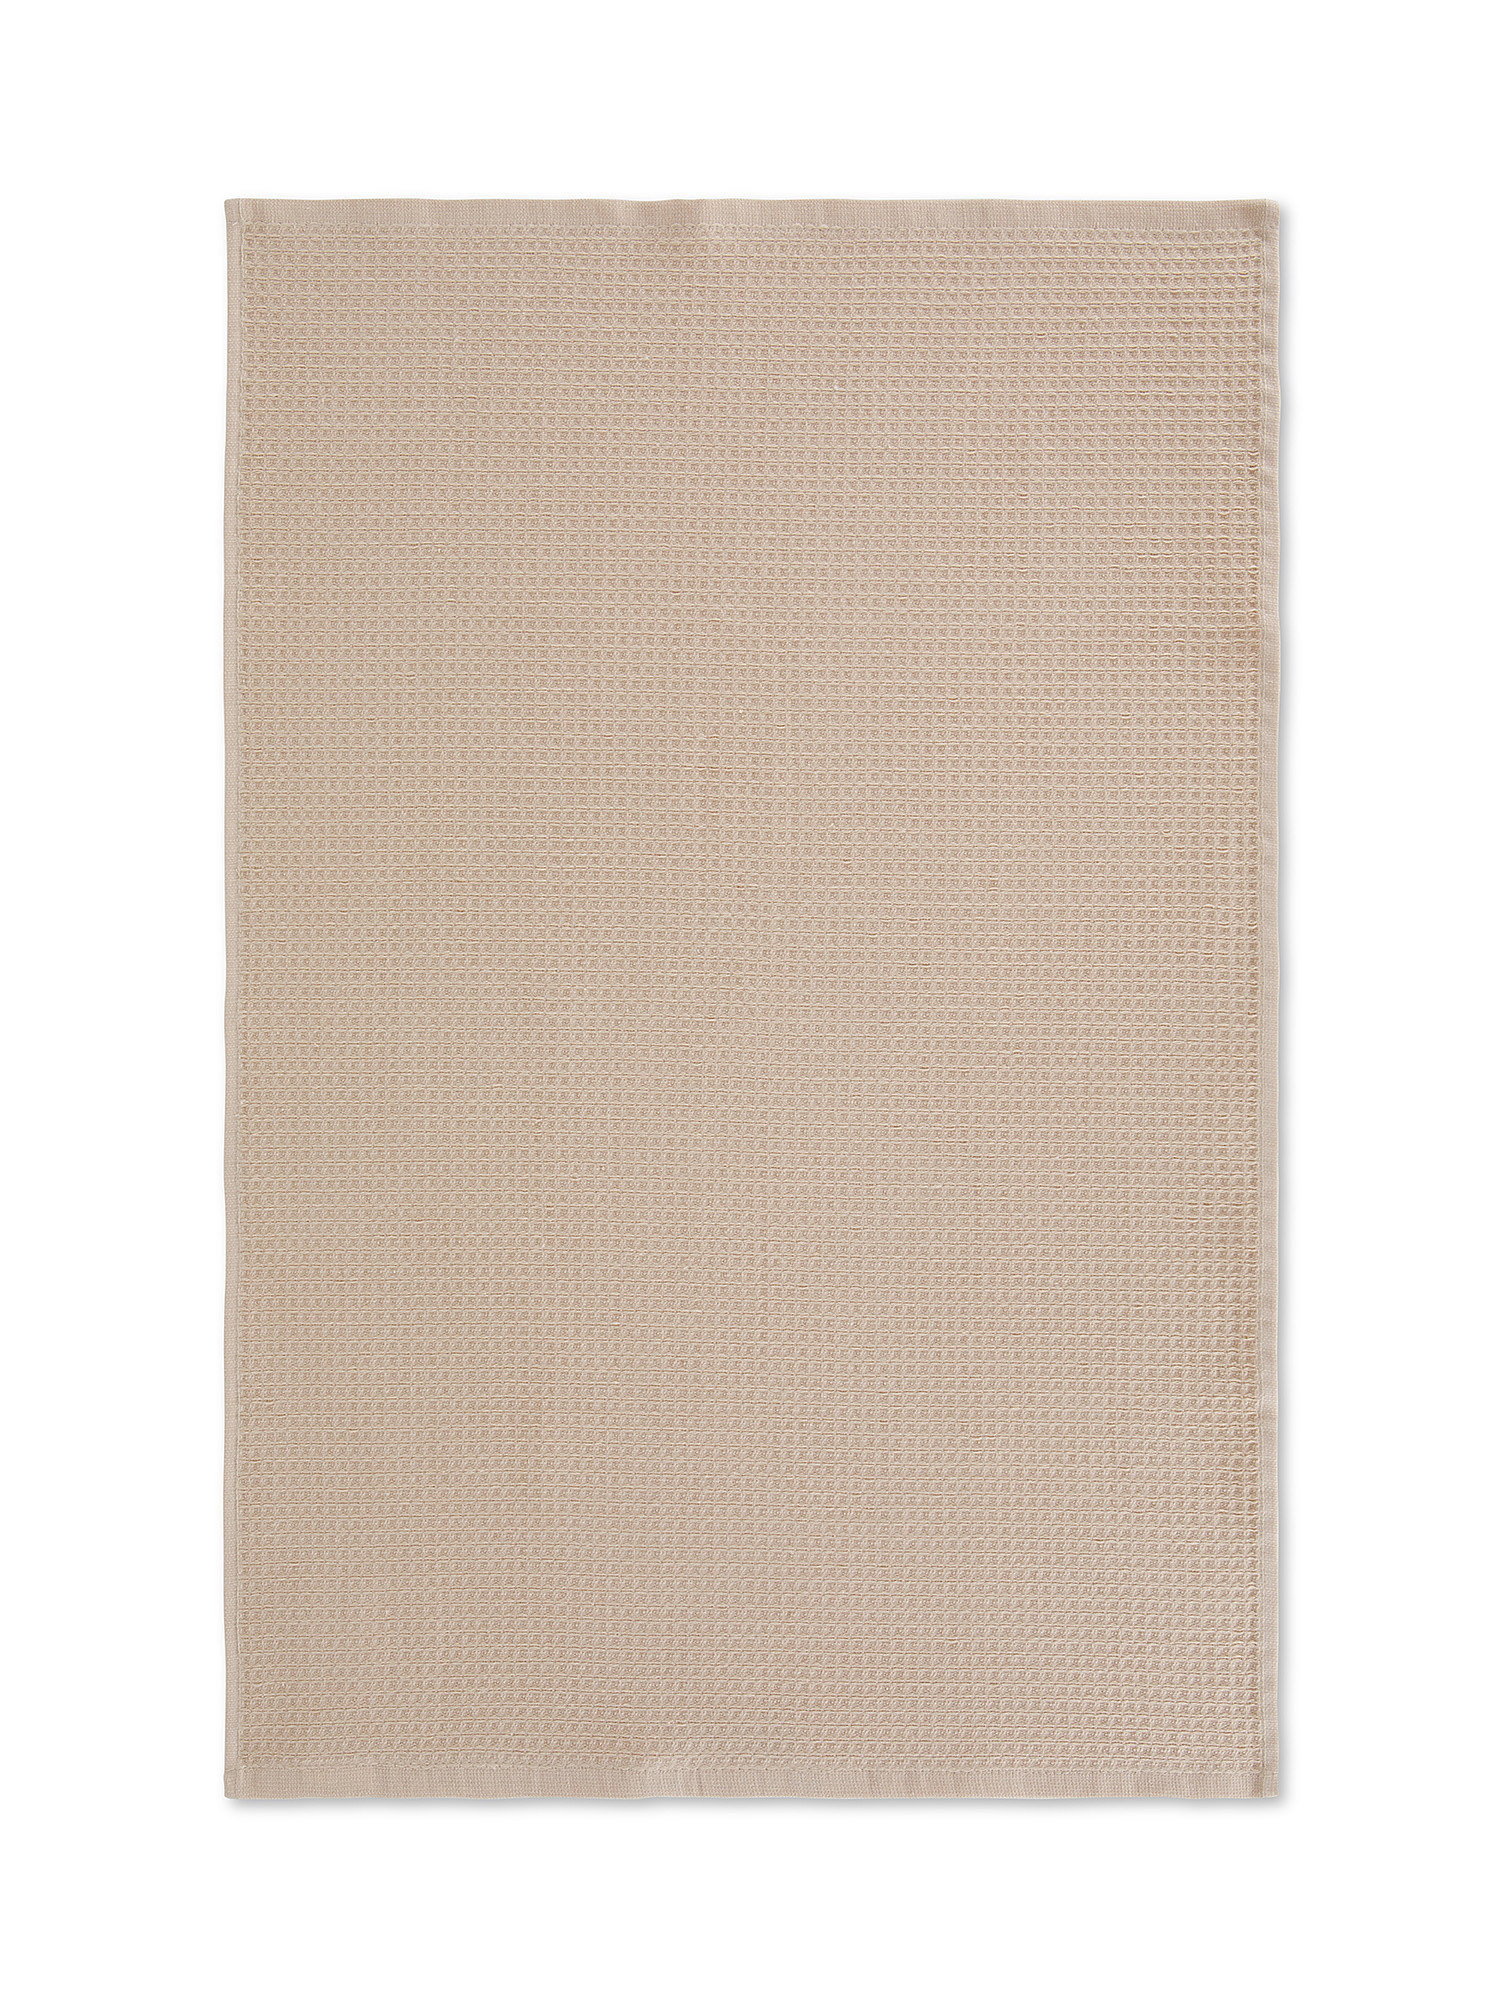 Set of 3 plain color cotton pique tea towels, Beige, large image number 1